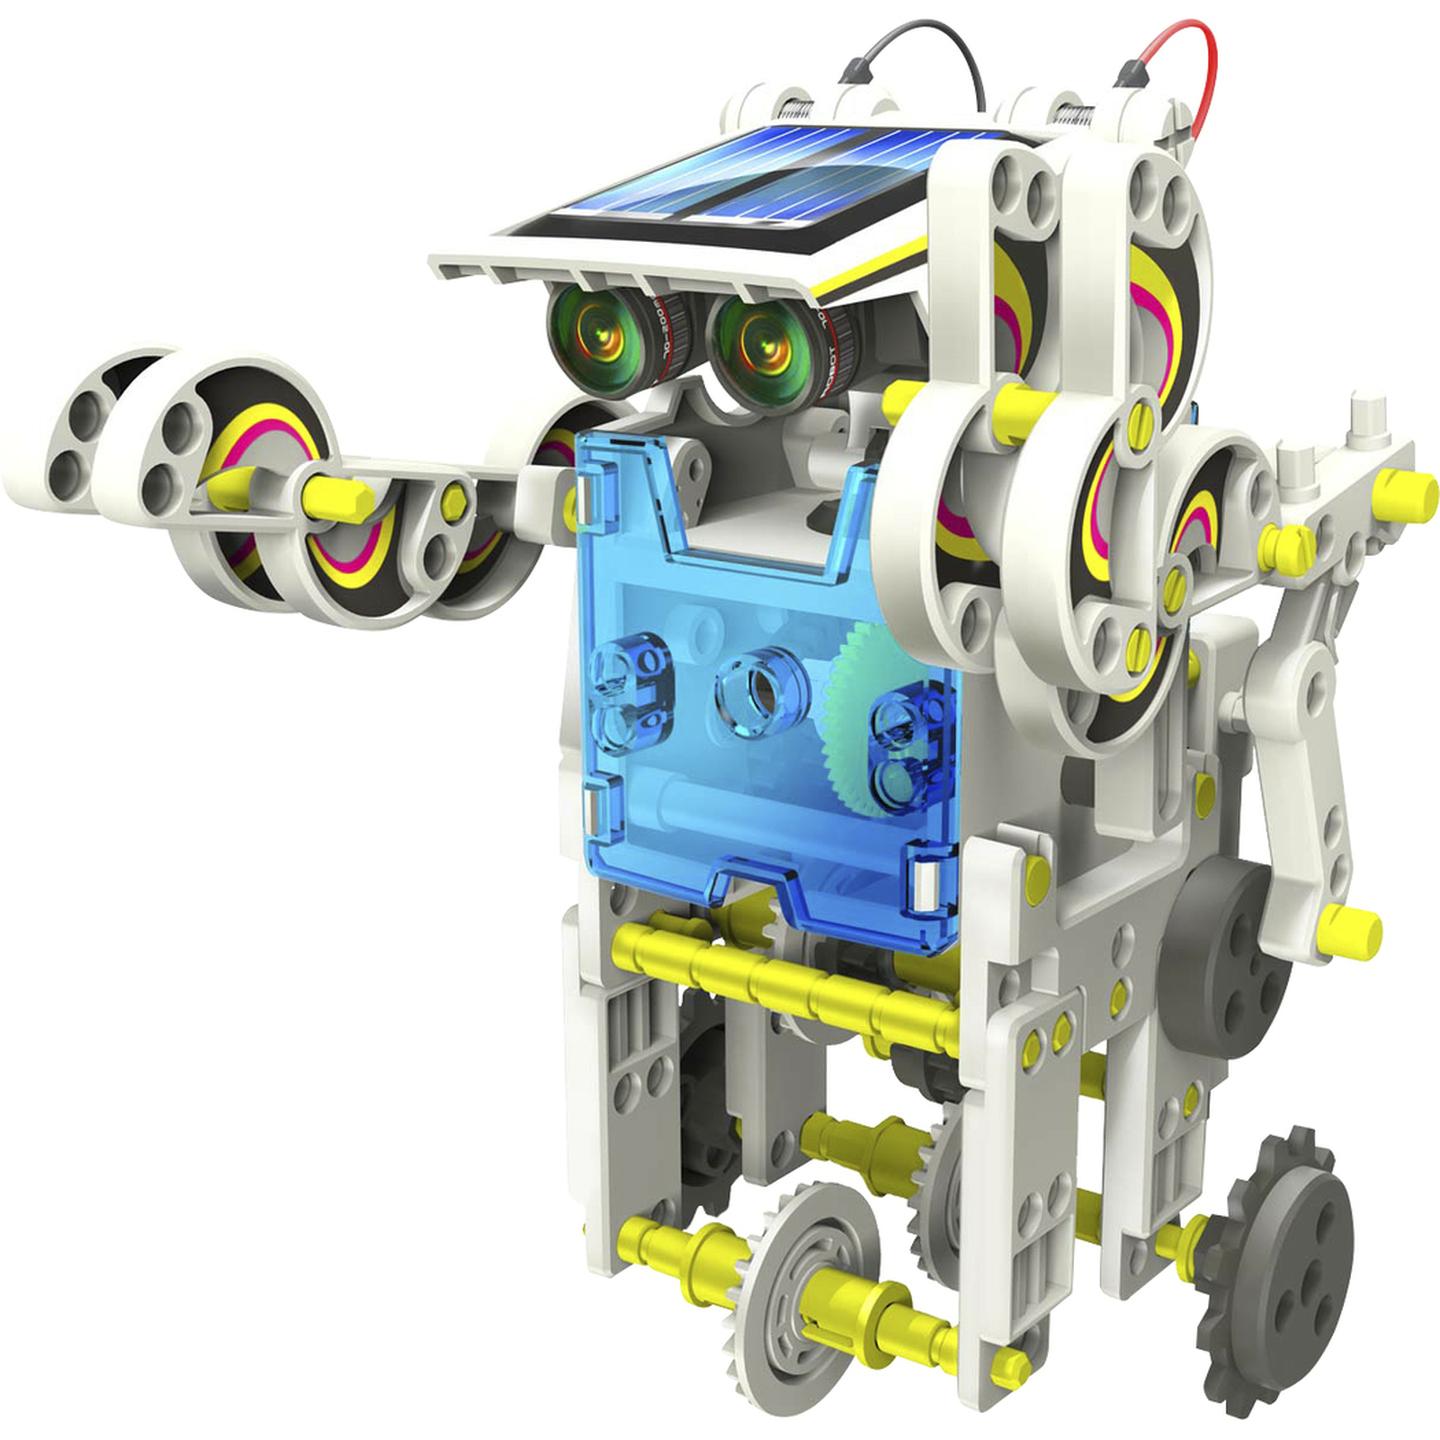 14 in 1 Solar Robot Educational Kit